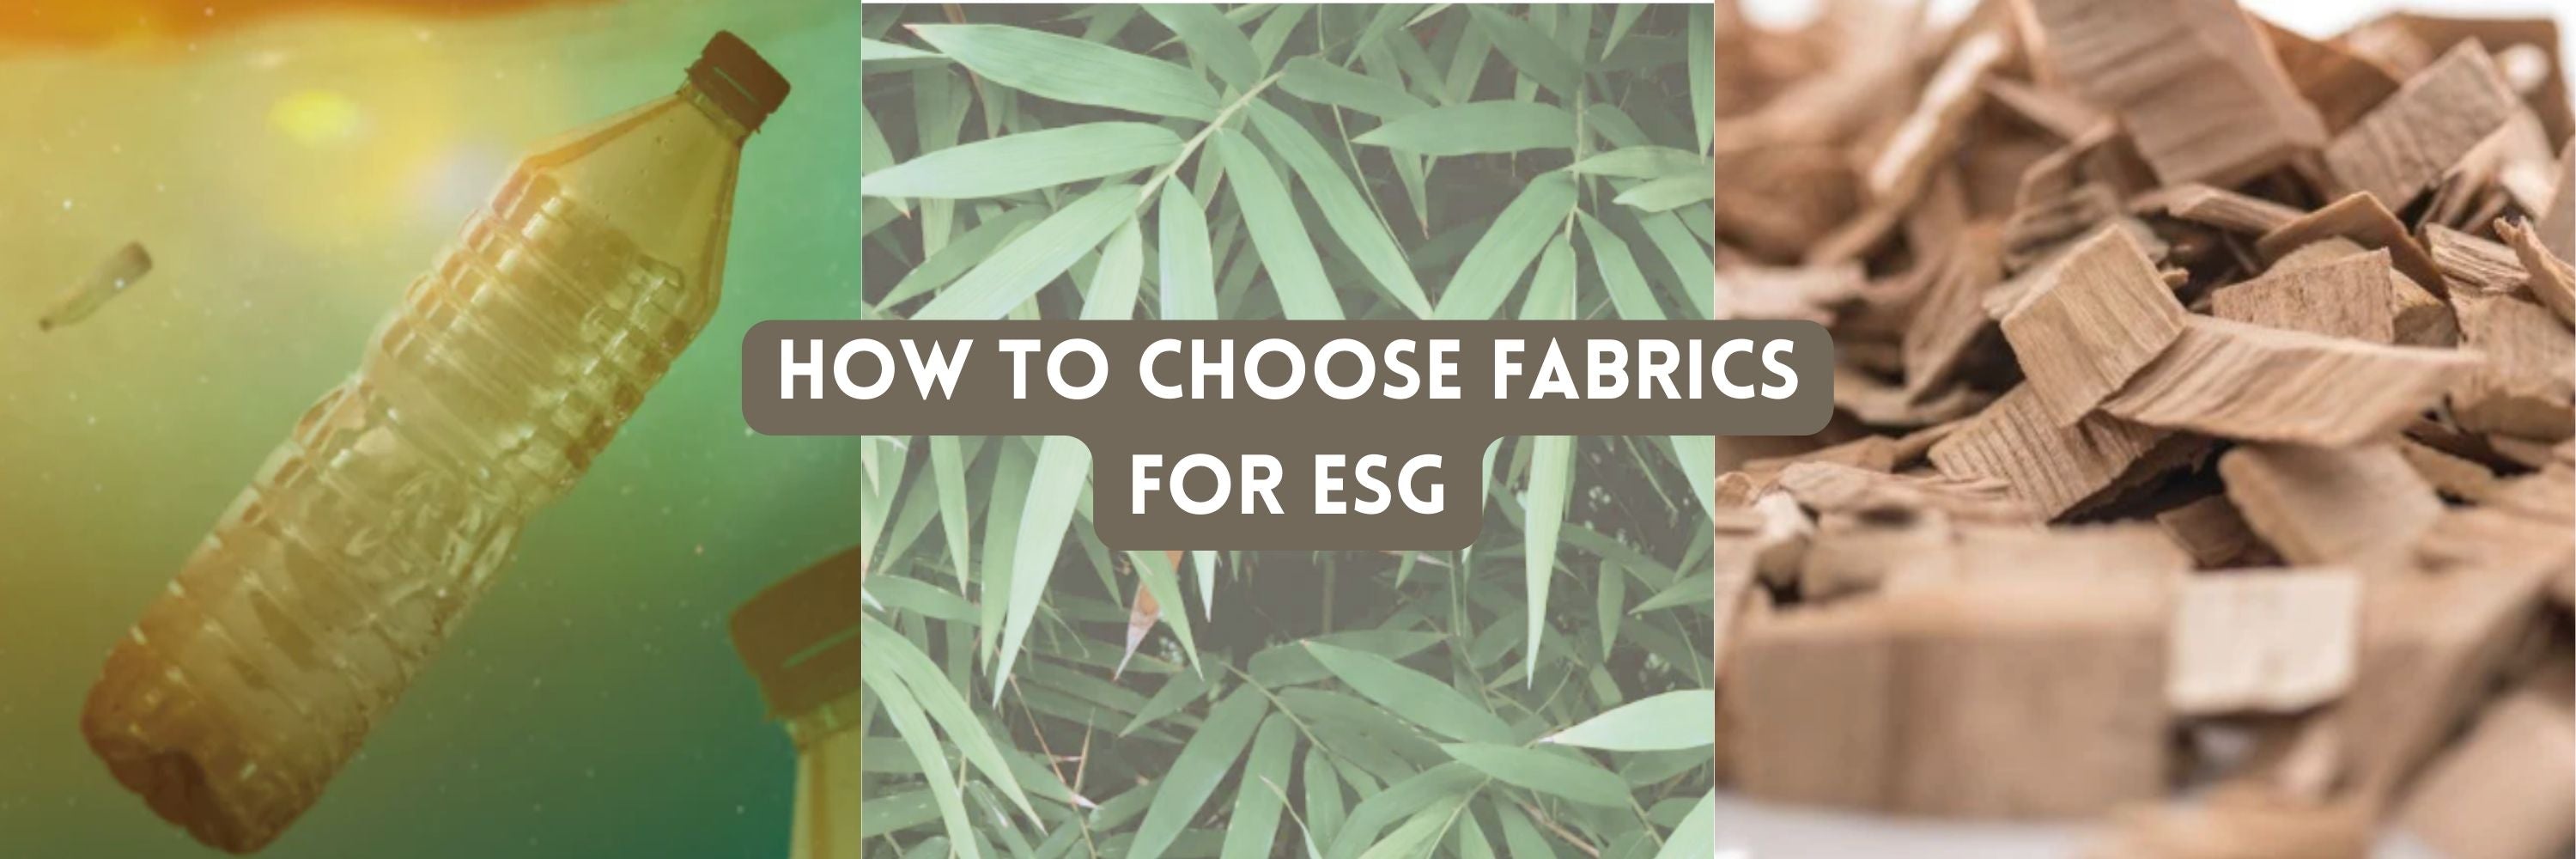 How to Choose Fabrics for ESG